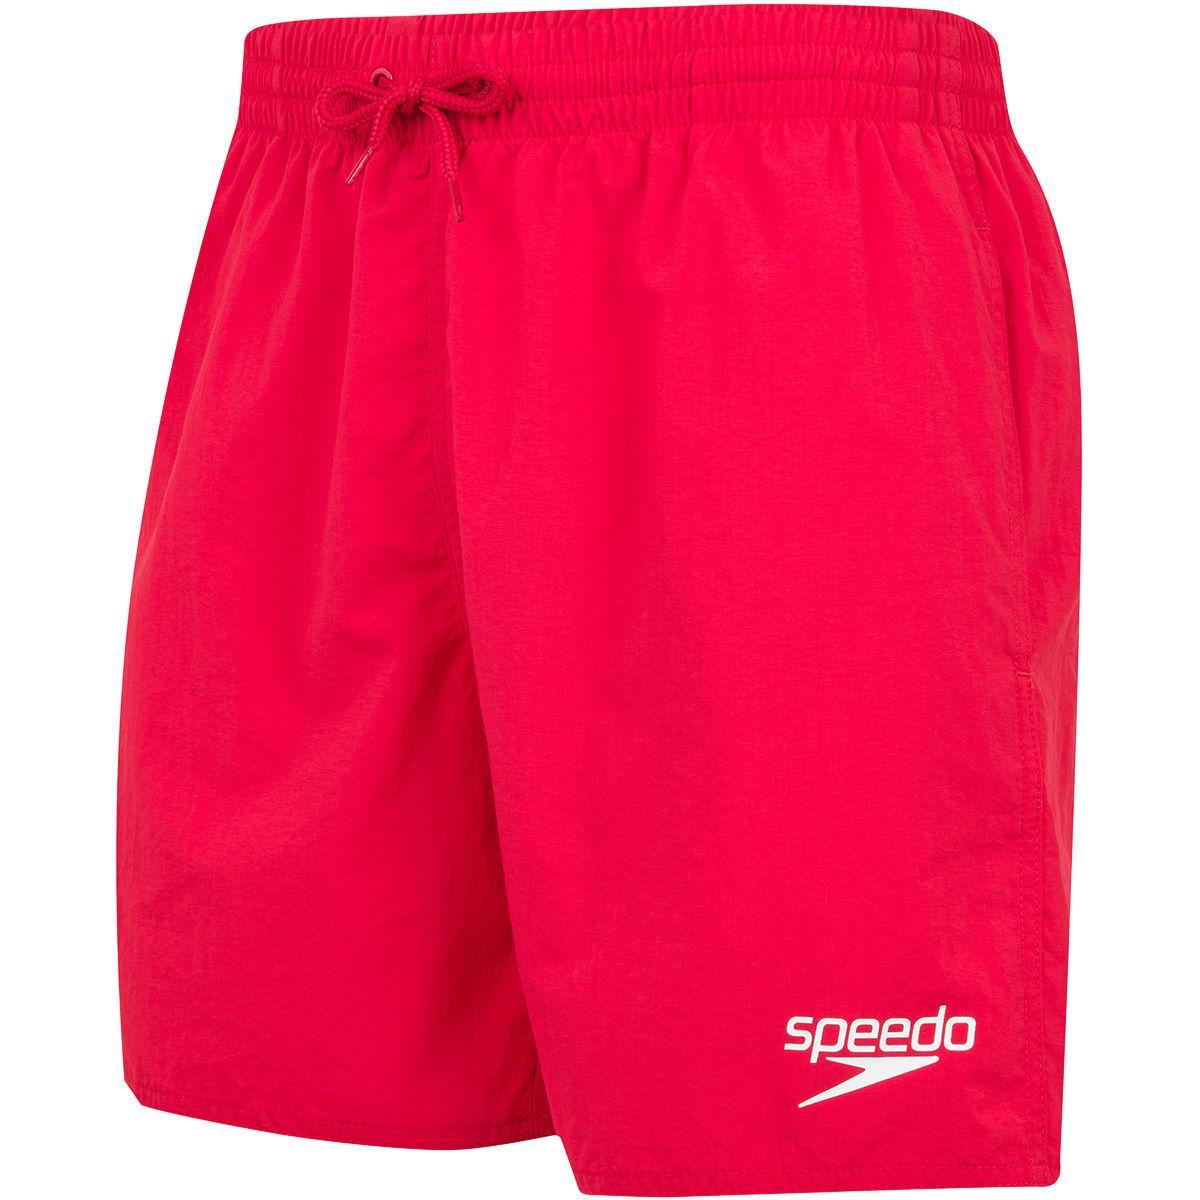 Speedo Mens Essentials 16 Swim Shorts (Red) (XXL)